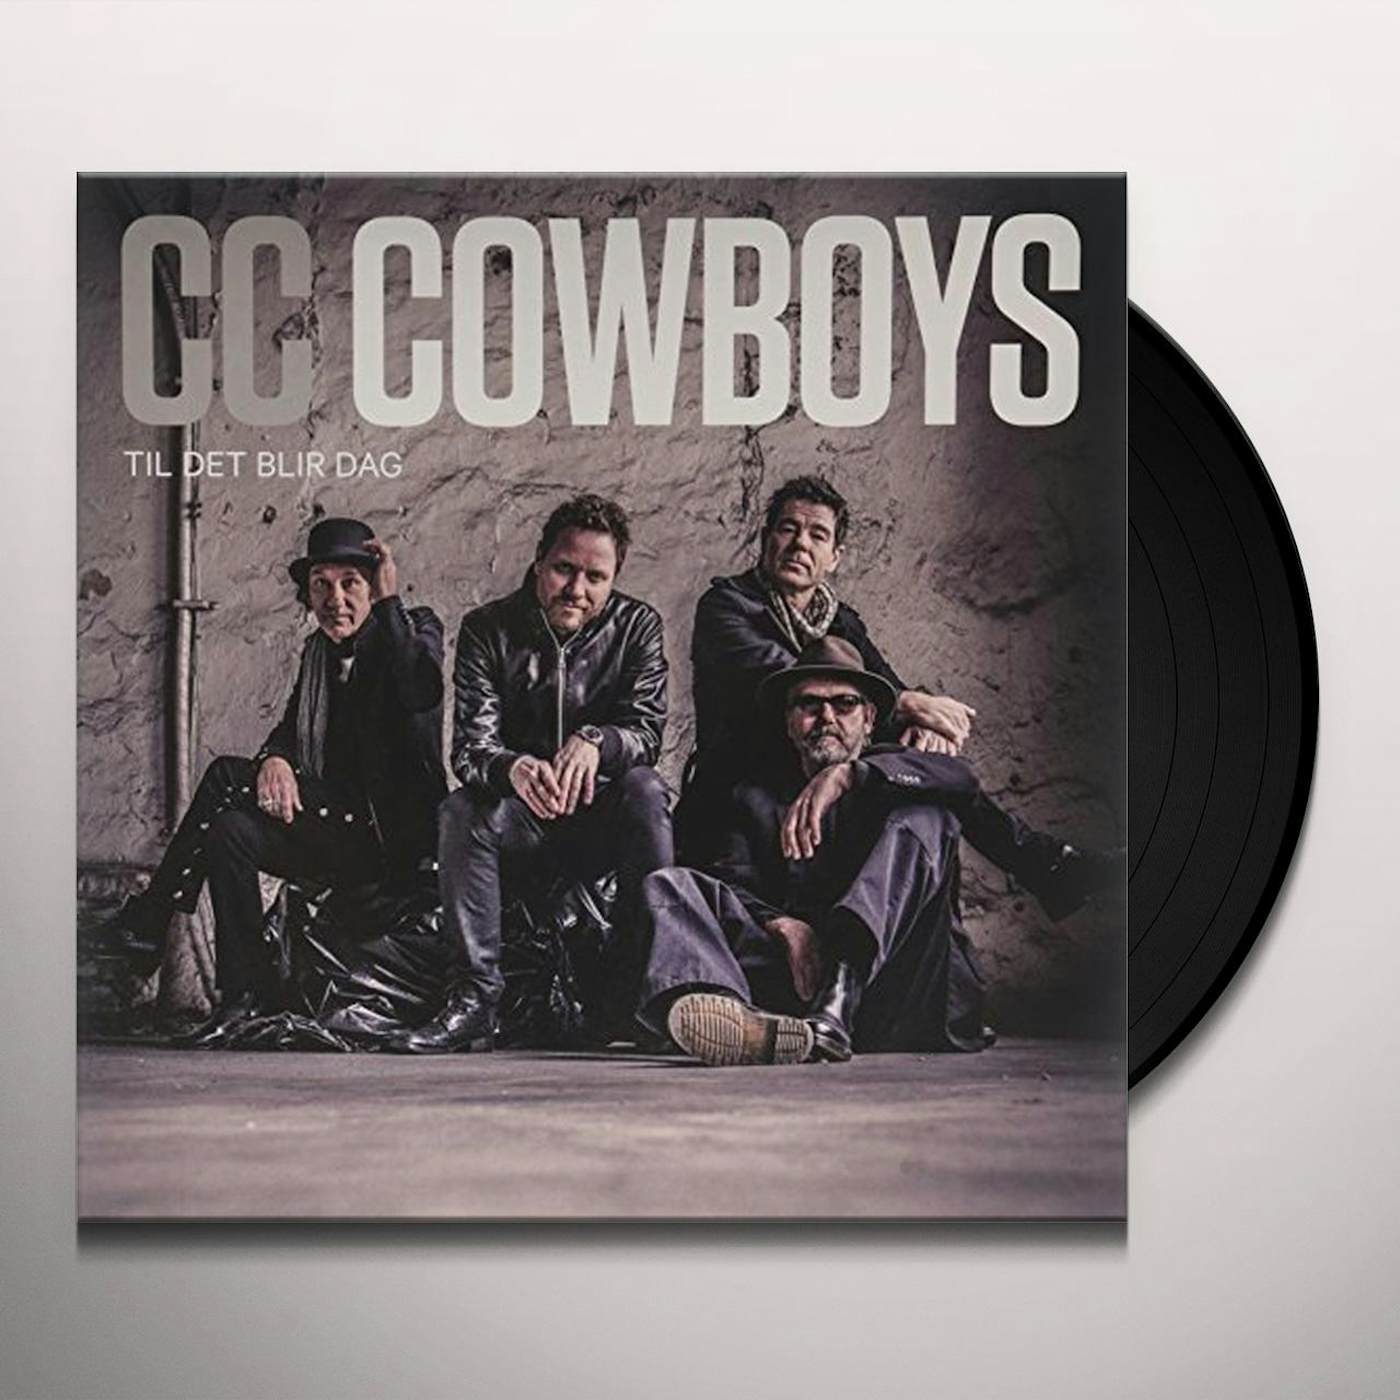 CC Cowboys Til det blir dag Vinyl Record